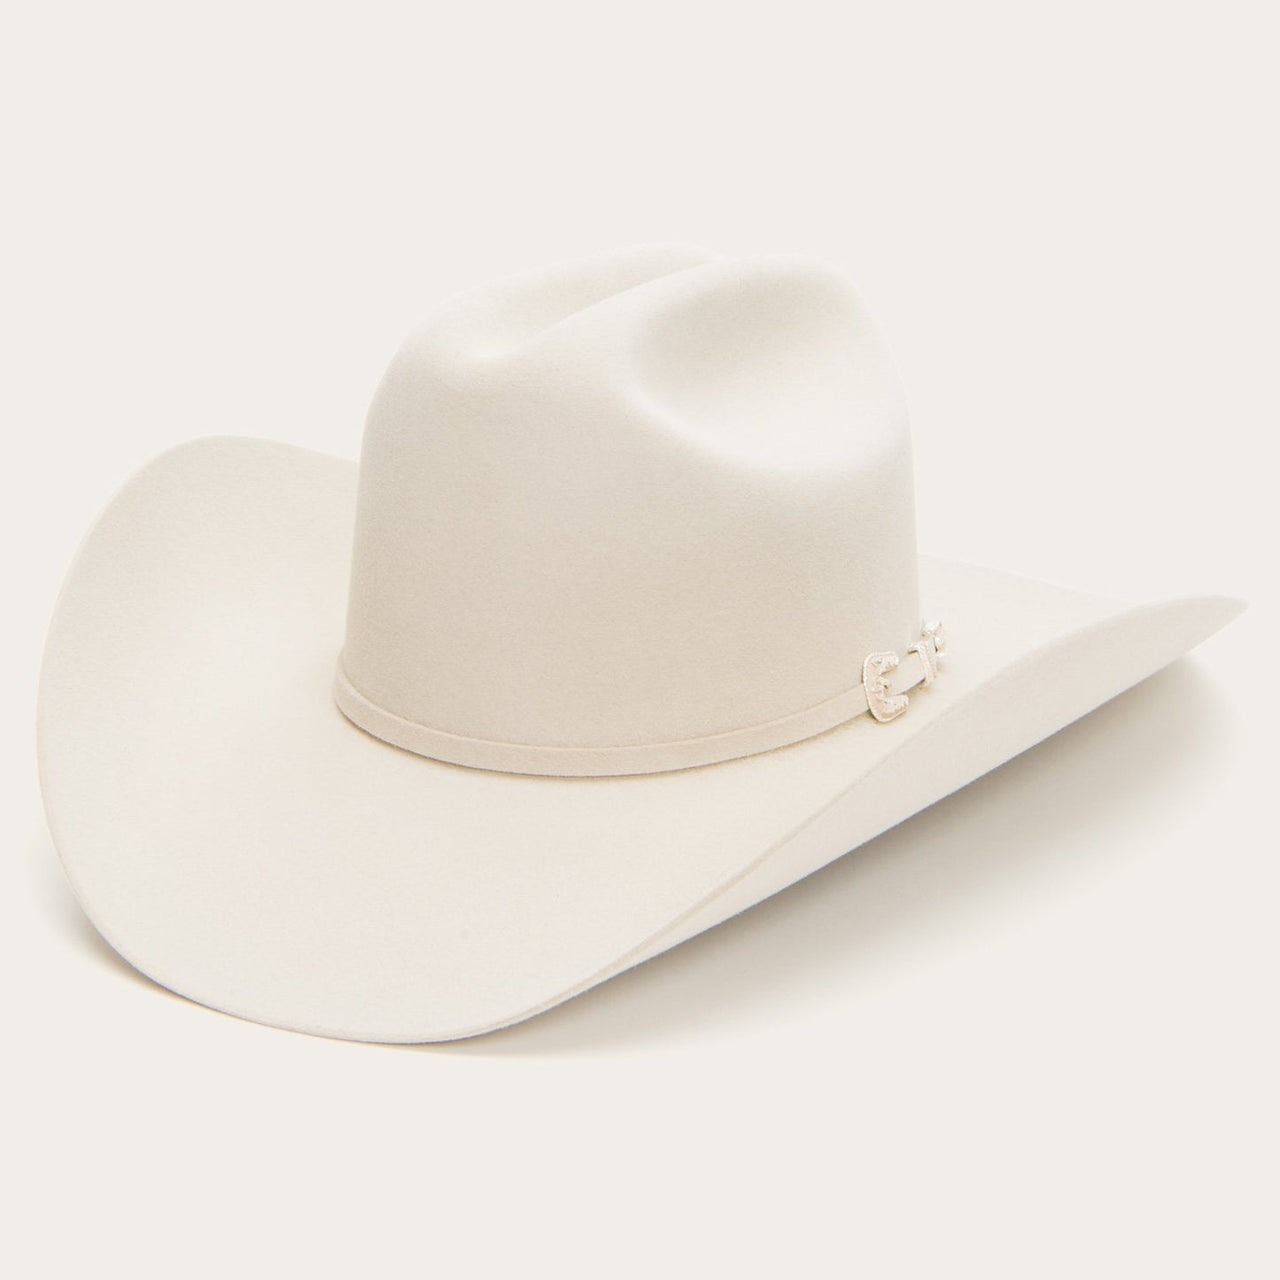 6x Stetson Skyline Fur Felt Cowboy Hat Silver Belly